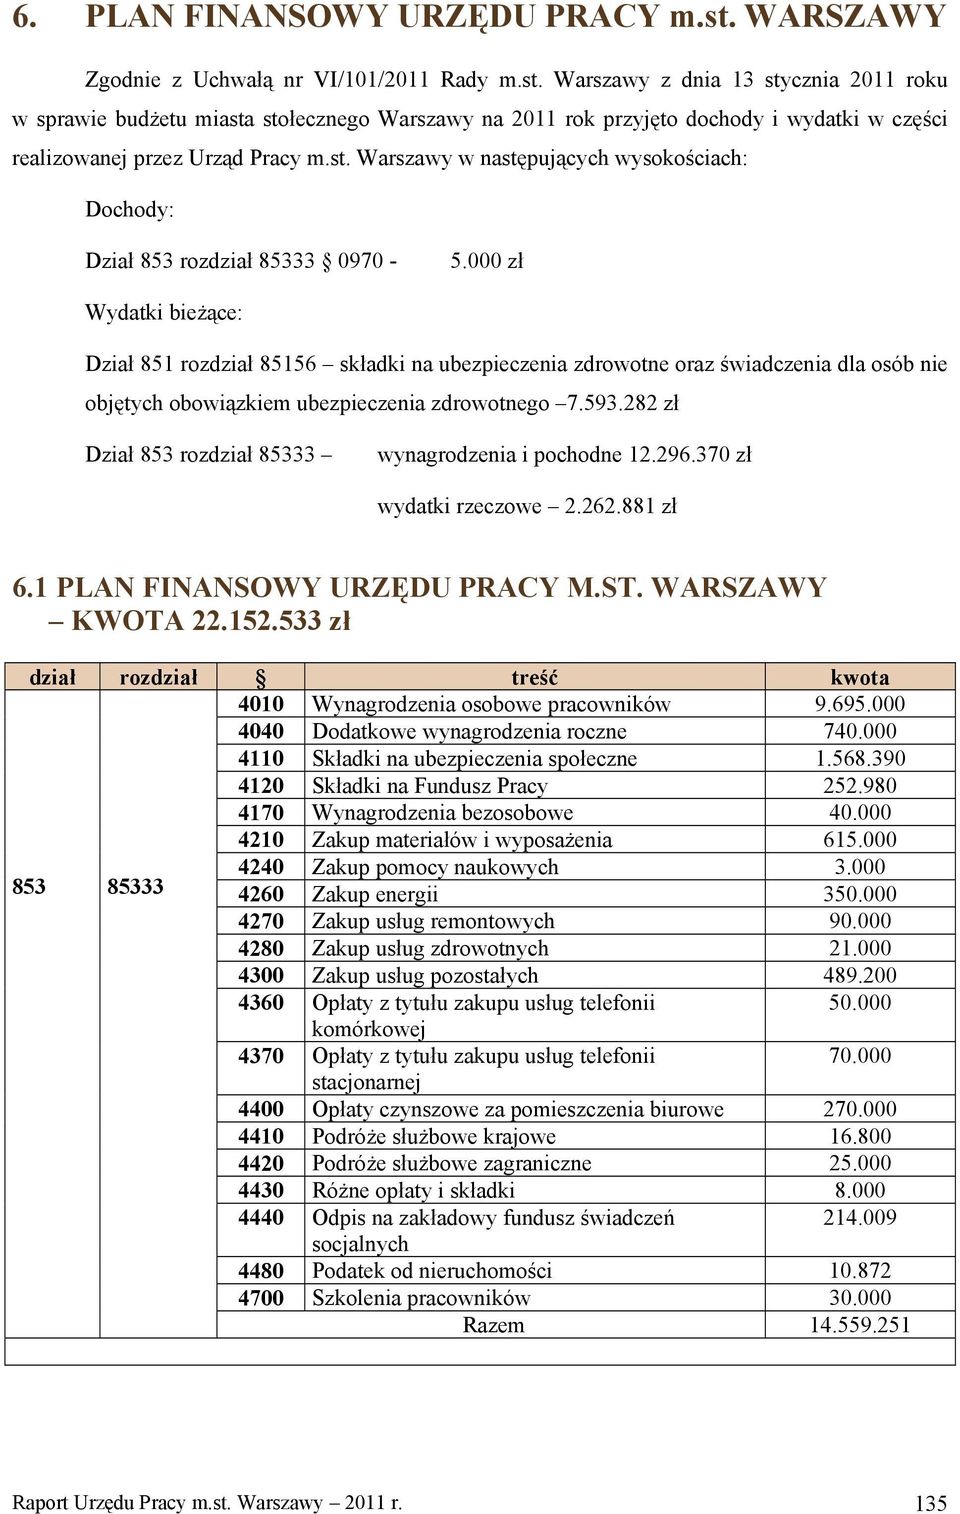 Warszawy z dnia 13 stycznia 2011 roku w sprawie budżetu miasta stołecznego Warszawy na 2011 rok przyjęto dochody i wydatki w części realizowanej przez Urząd Pracy m.st. Warszawy w następujących wysokościach: Dochody: Dział 853 rozdział 85333 0970-5.